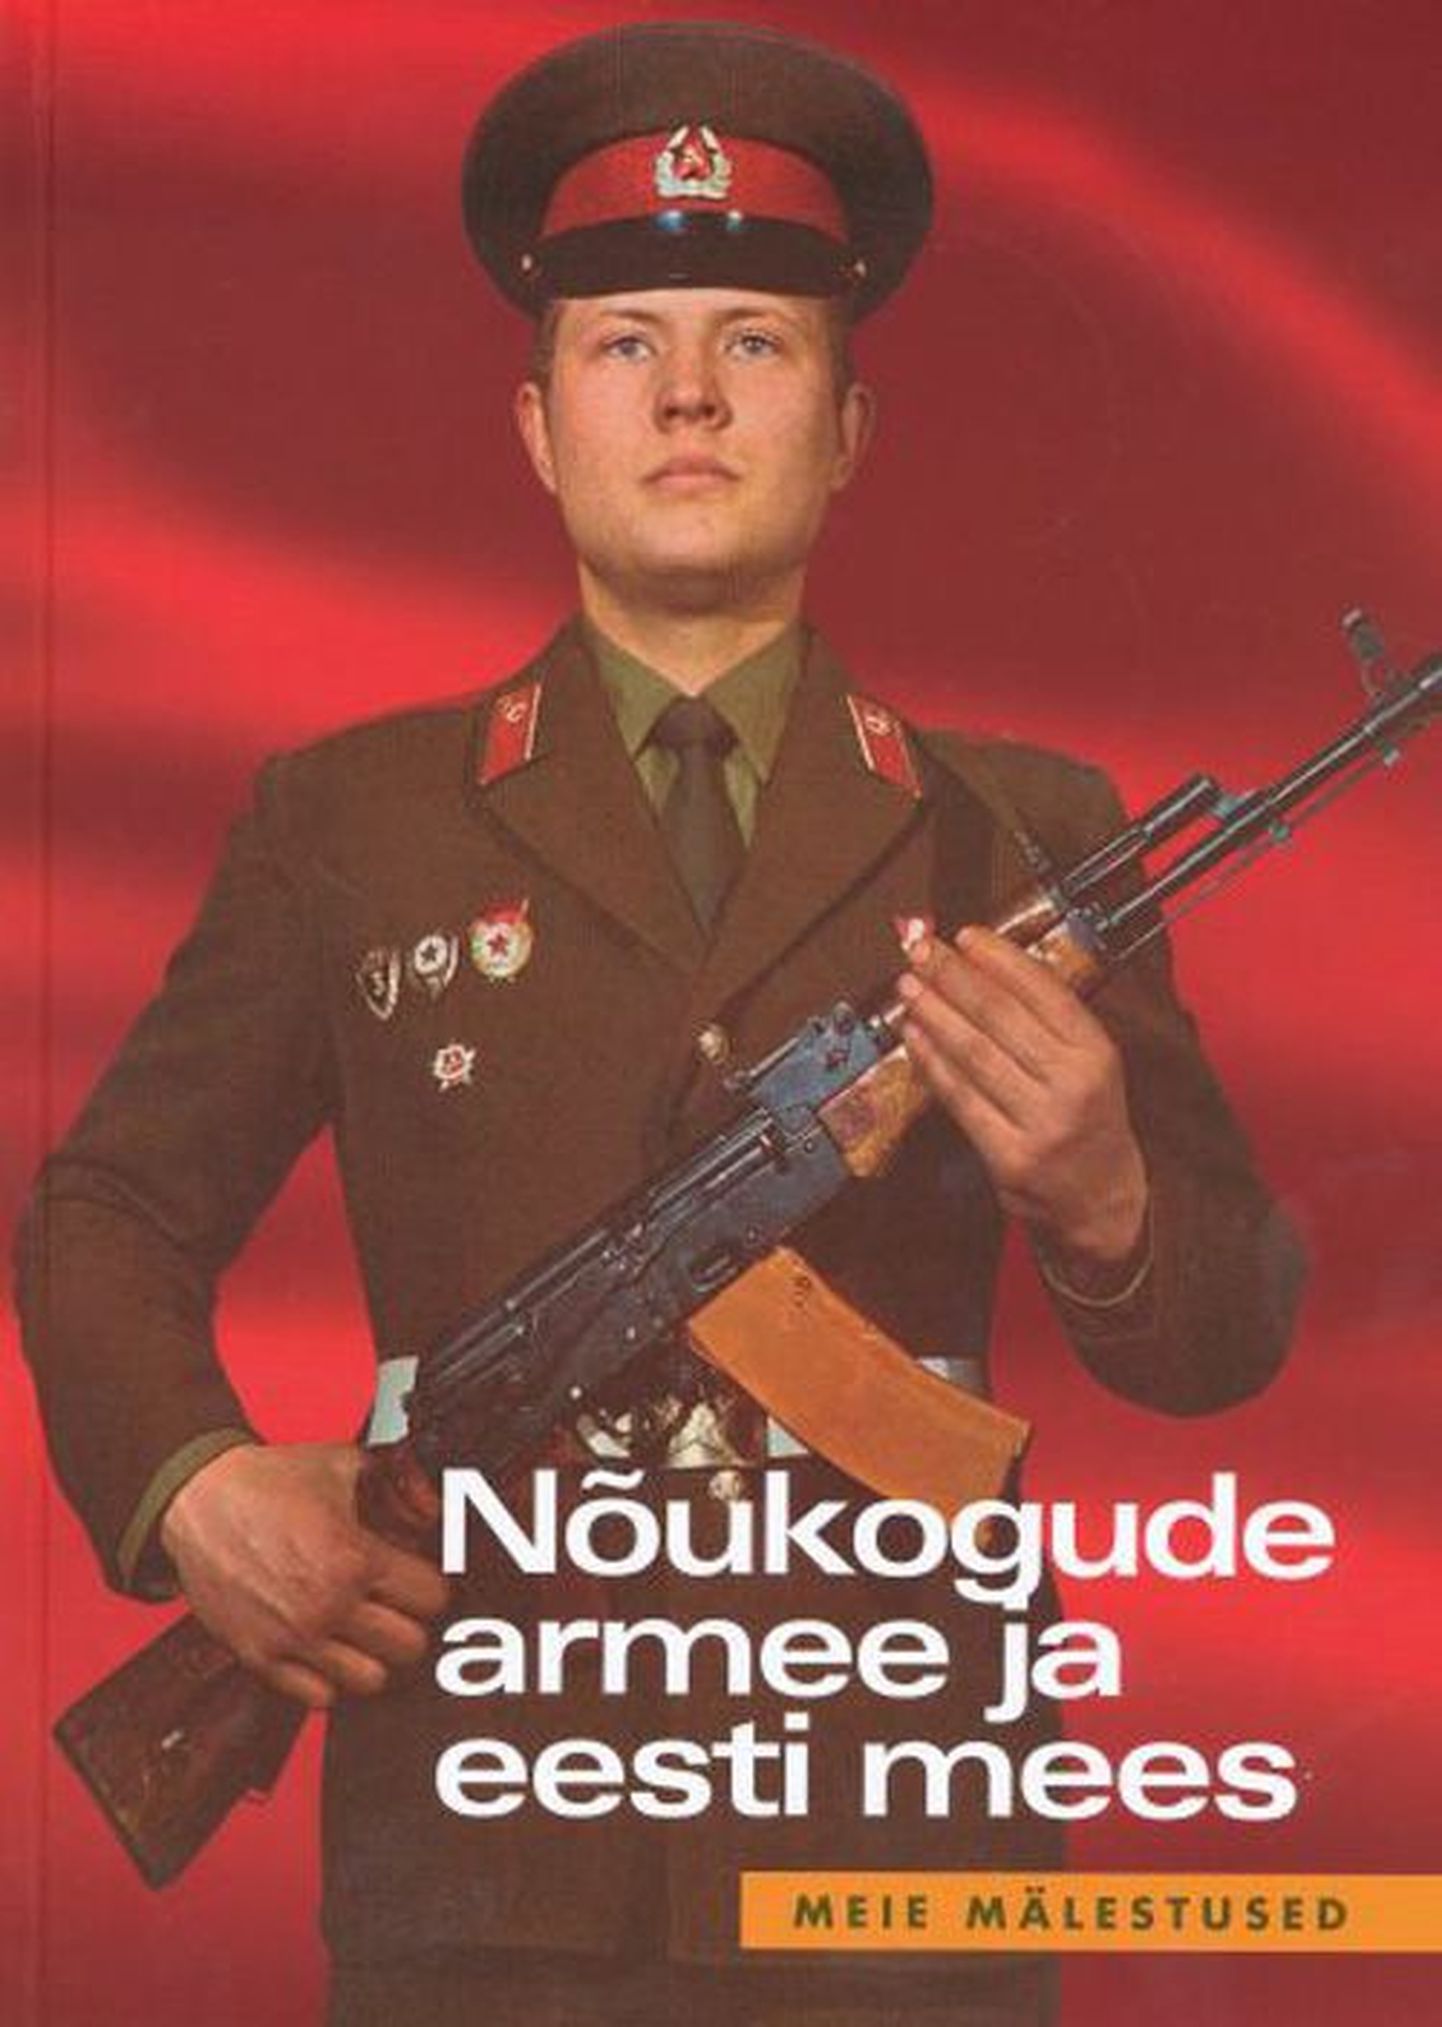 Raamat

«Nõukogude armee ja eesti mees»
Koostaja Enno Tammer
471 lk
Tammerraamat 2010